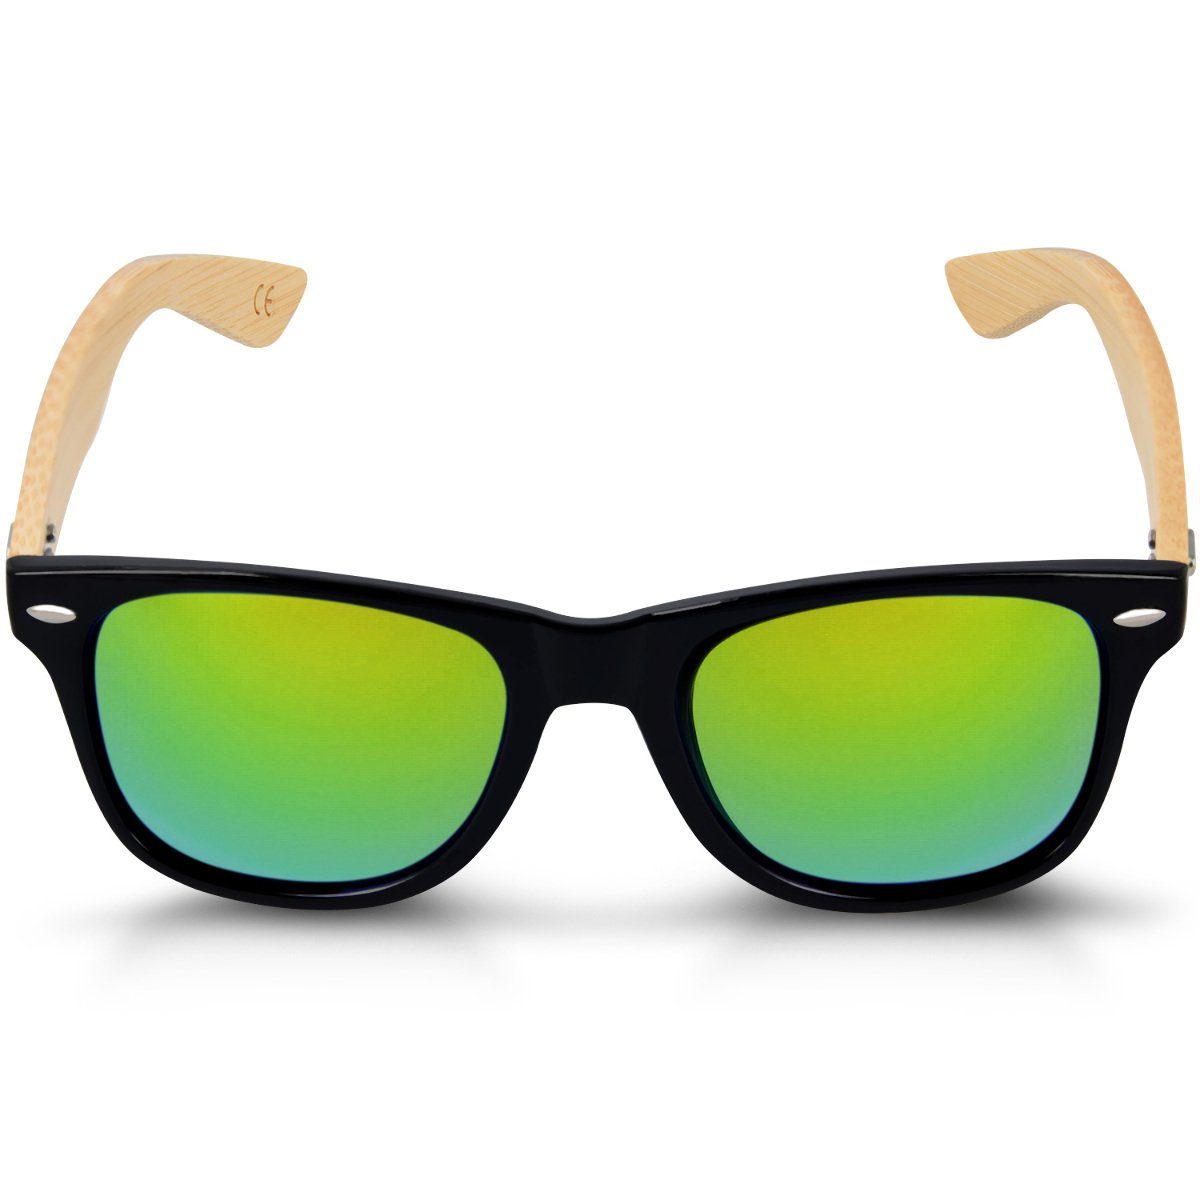 Schwarz Sonnenbrille mit Unisex Bambus UV400 Brille Etui Navaris - Bügeln Holzbrille mit